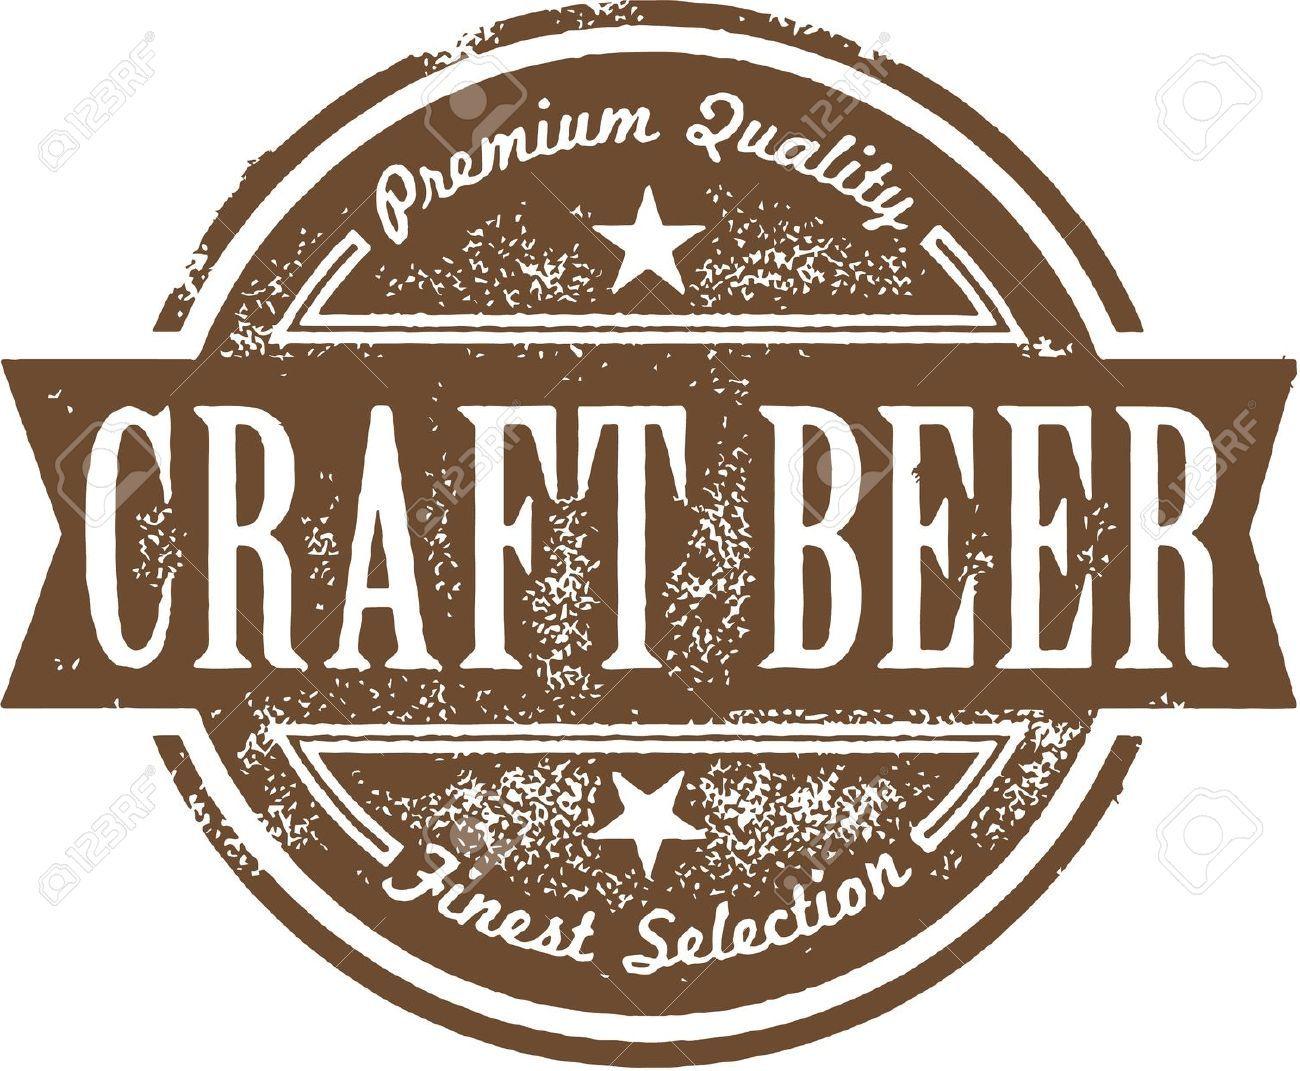 Brown Beer Logo - Craft Beer Label in 2019 | Scott | Craft beer labels, Beer, Beer label